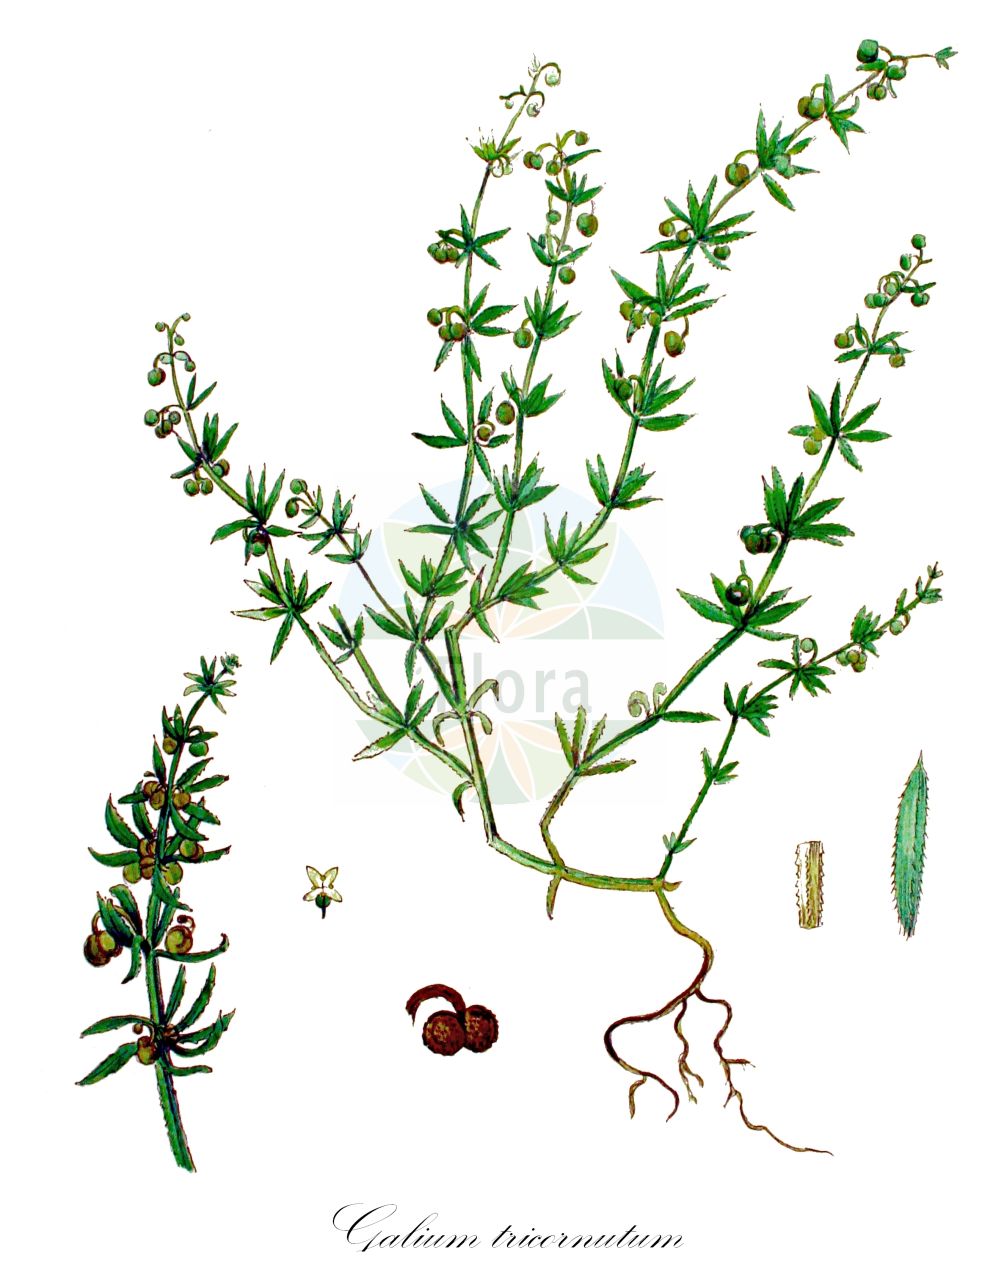 Historische Abbildung von Galium tricornutum (Dreihörniges Labkraut - Corn Cleavers). Das Bild zeigt Blatt, Bluete, Frucht und Same. ---- Historical Drawing of Galium tricornutum (Dreihörniges Labkraut - Corn Cleavers). The image is showing leaf, flower, fruit and seed.(Galium tricornutum,Dreihörniges Labkraut,Corn Cleavers,Galium tricorne,Galium tricornutum,Dreihoerniges Labkraut,Corn Cleavers,Roughfruit Corn Bedstraw,Rough Corn Bedstraw,Rough Corn Cleavers,Small Goosegrass,Three-horn Bedstraw,Galium,Labkraut,Bedstraw,Rubiaceae,Rötegewächse,Bedstraw family,Blatt,Bluete,Frucht,Same,leaf,flower,fruit,seed,Kops (1800-1934))